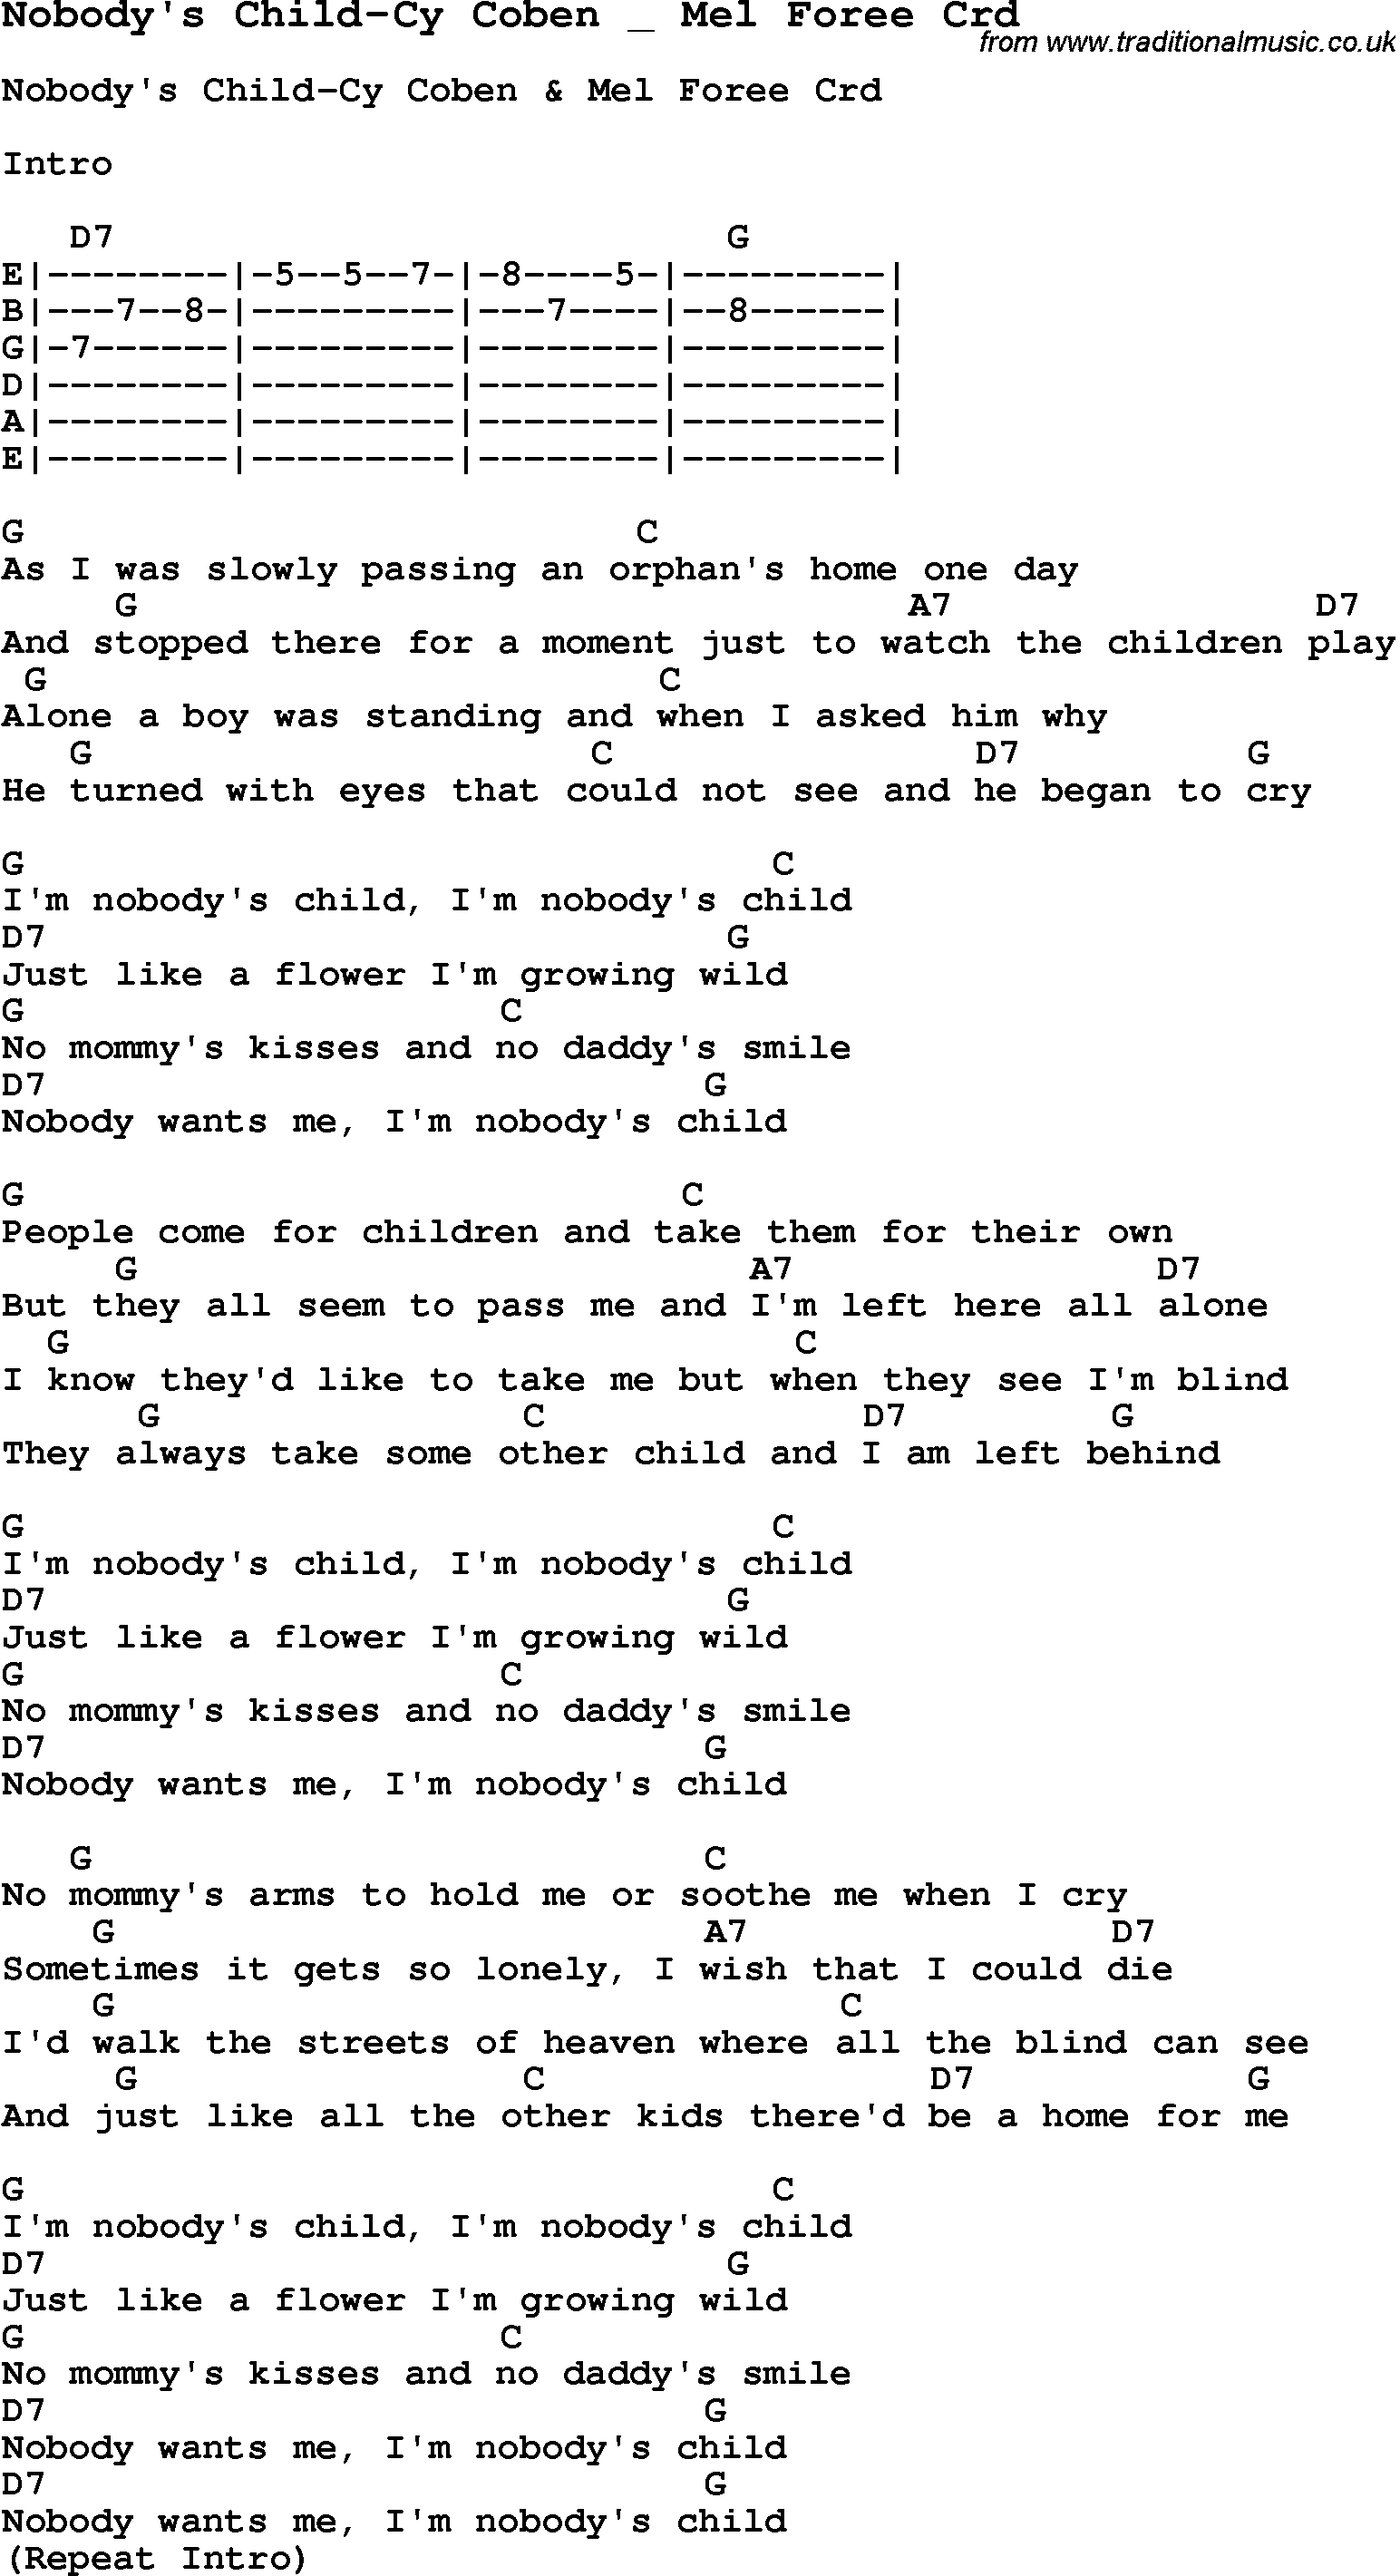 Skiffle Song Lyrics for Nobody's Child-Cy Coben Mel Foree with chords for Mandolin, Ukulele, Guitar, Banjo etc.